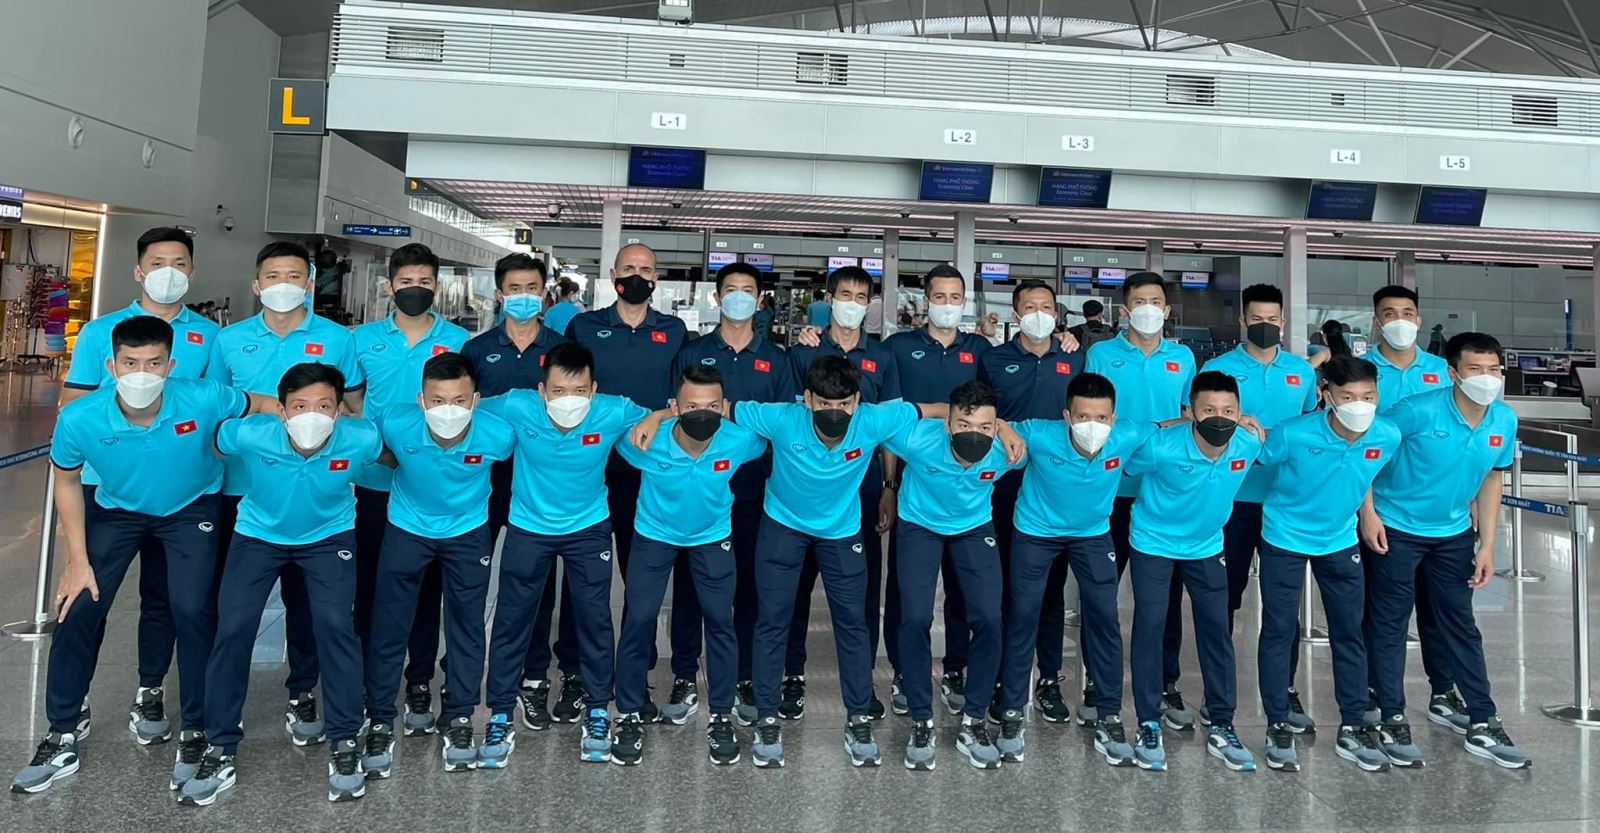 Đội tuyển futsal Việt Nam ở sân bay Tân Sơn Nhất, chuẩn bị đến Thái Lan. Ảnh: Anh Tú